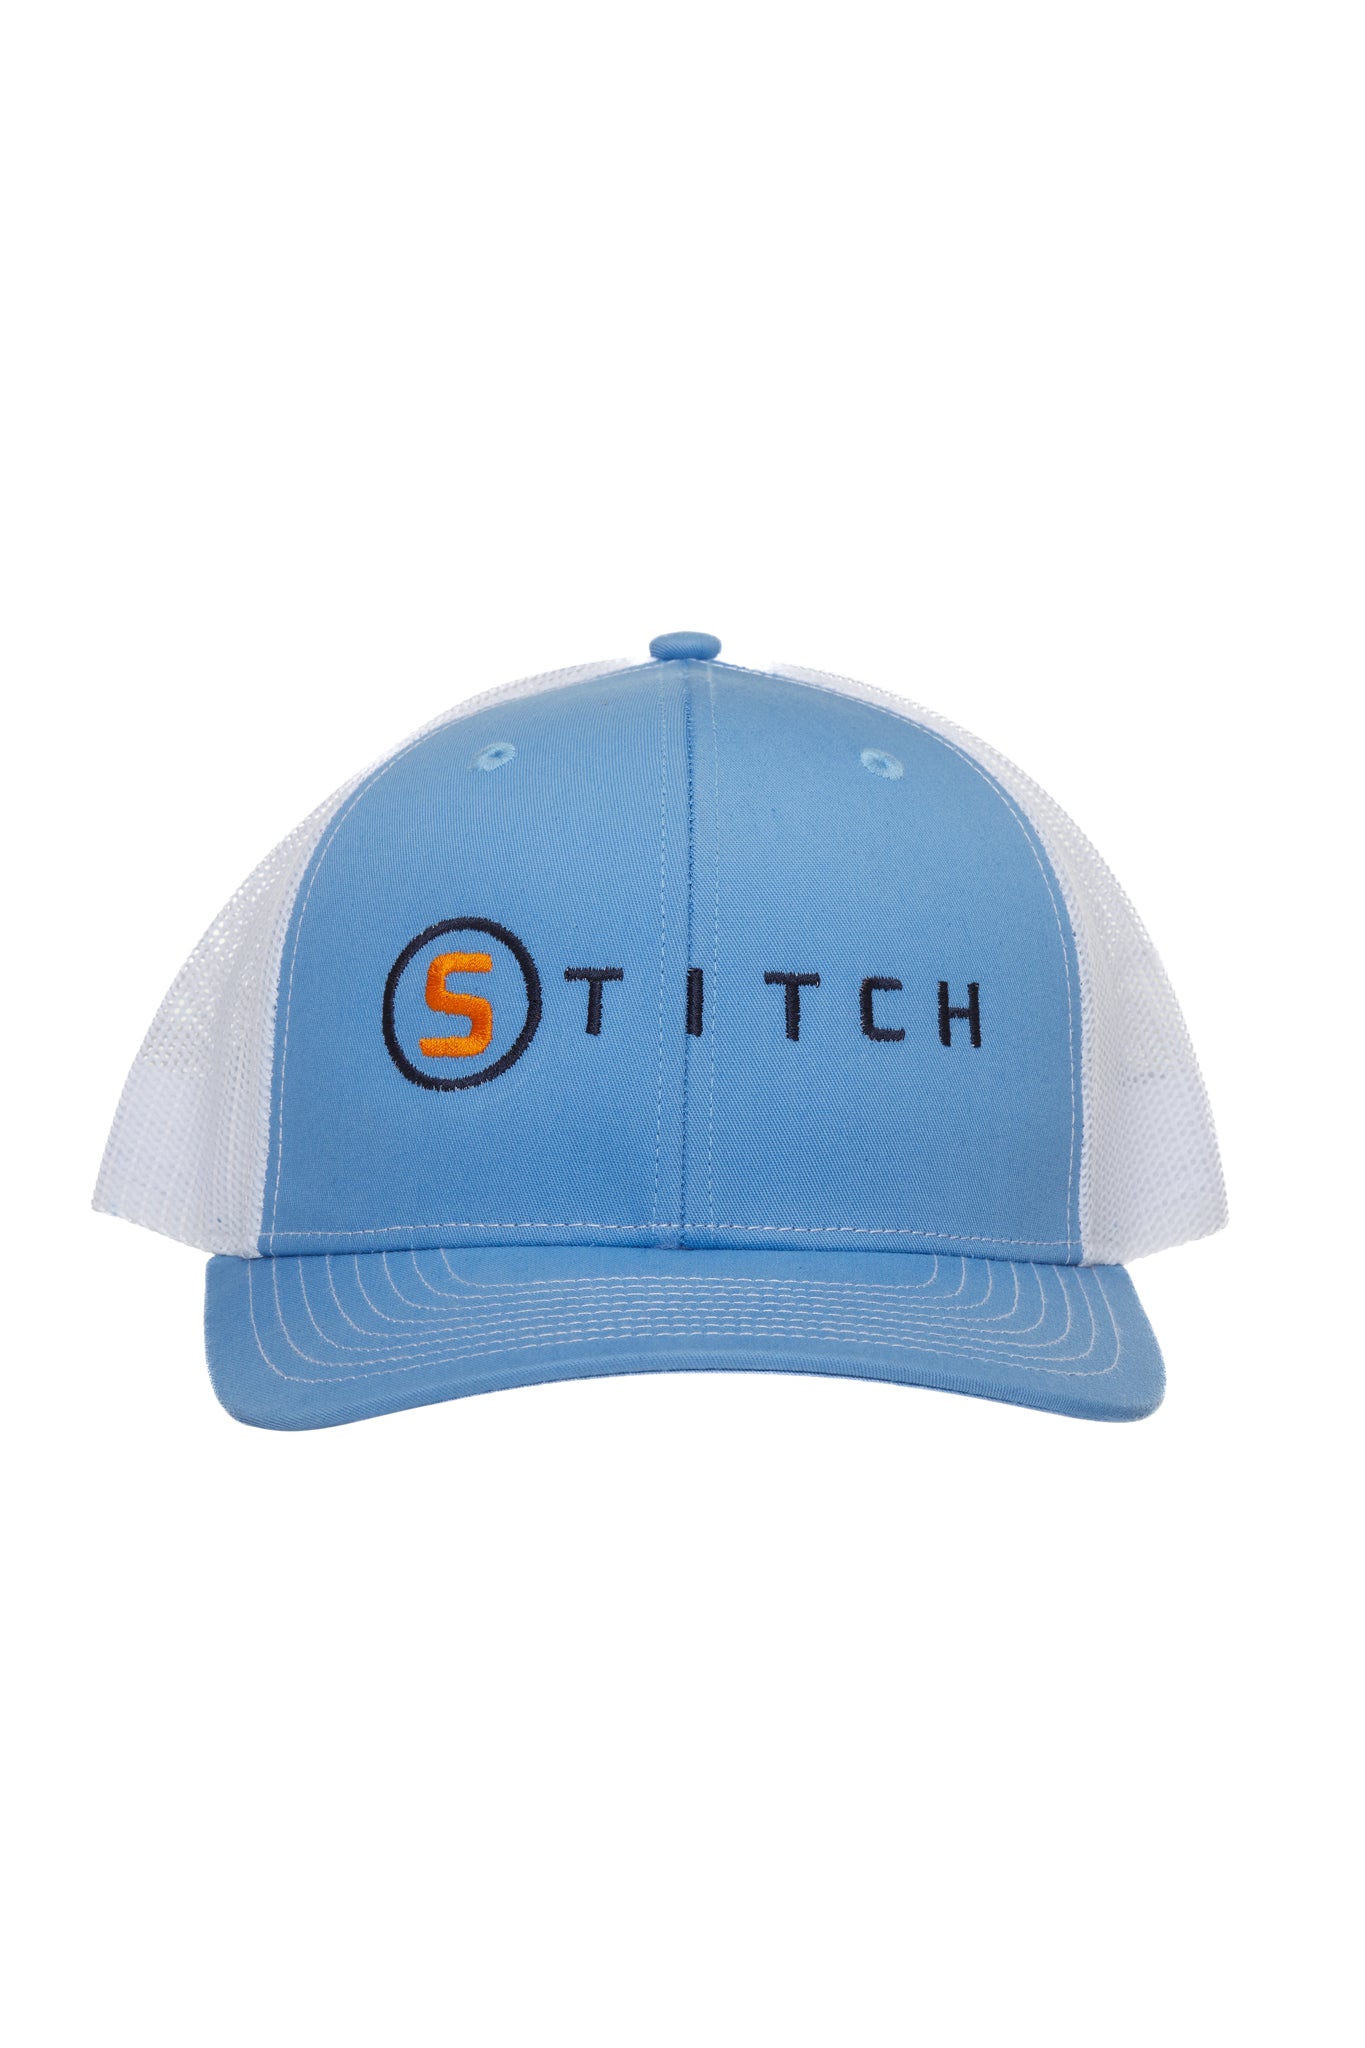 Stitch Trucker Hat